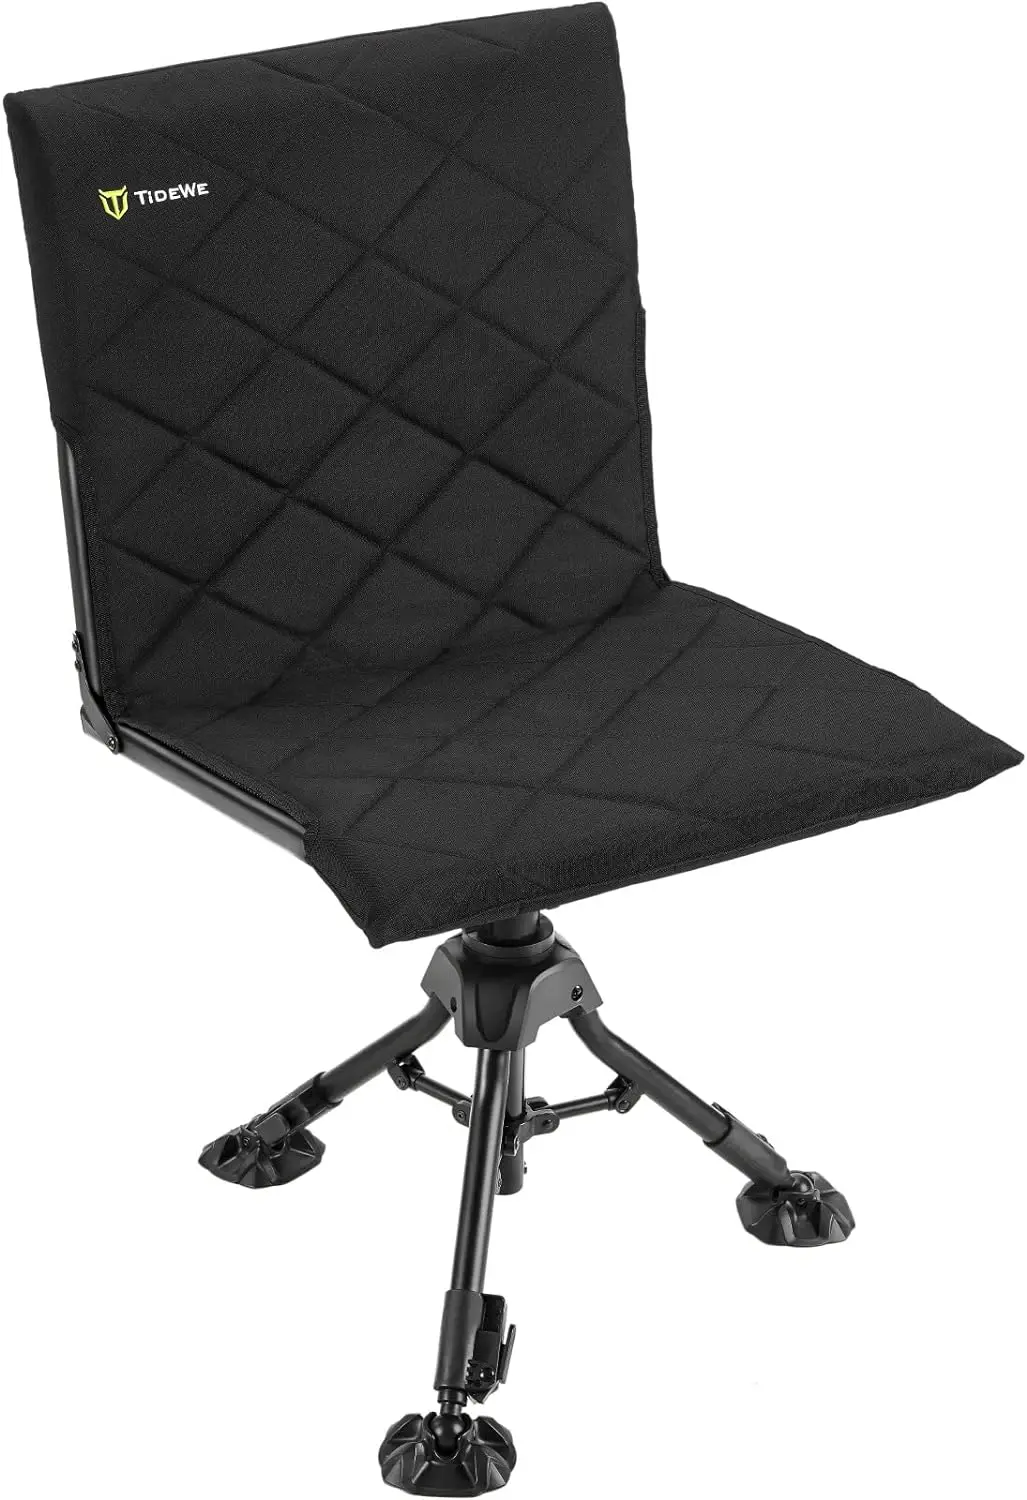 

Кресло с чехлом на сиденье, бесшумное вращающееся кресло с вращением на 360 градусов, складное кресло с регулируемой высотой и 3 ножками для охоты, портативное кресло для